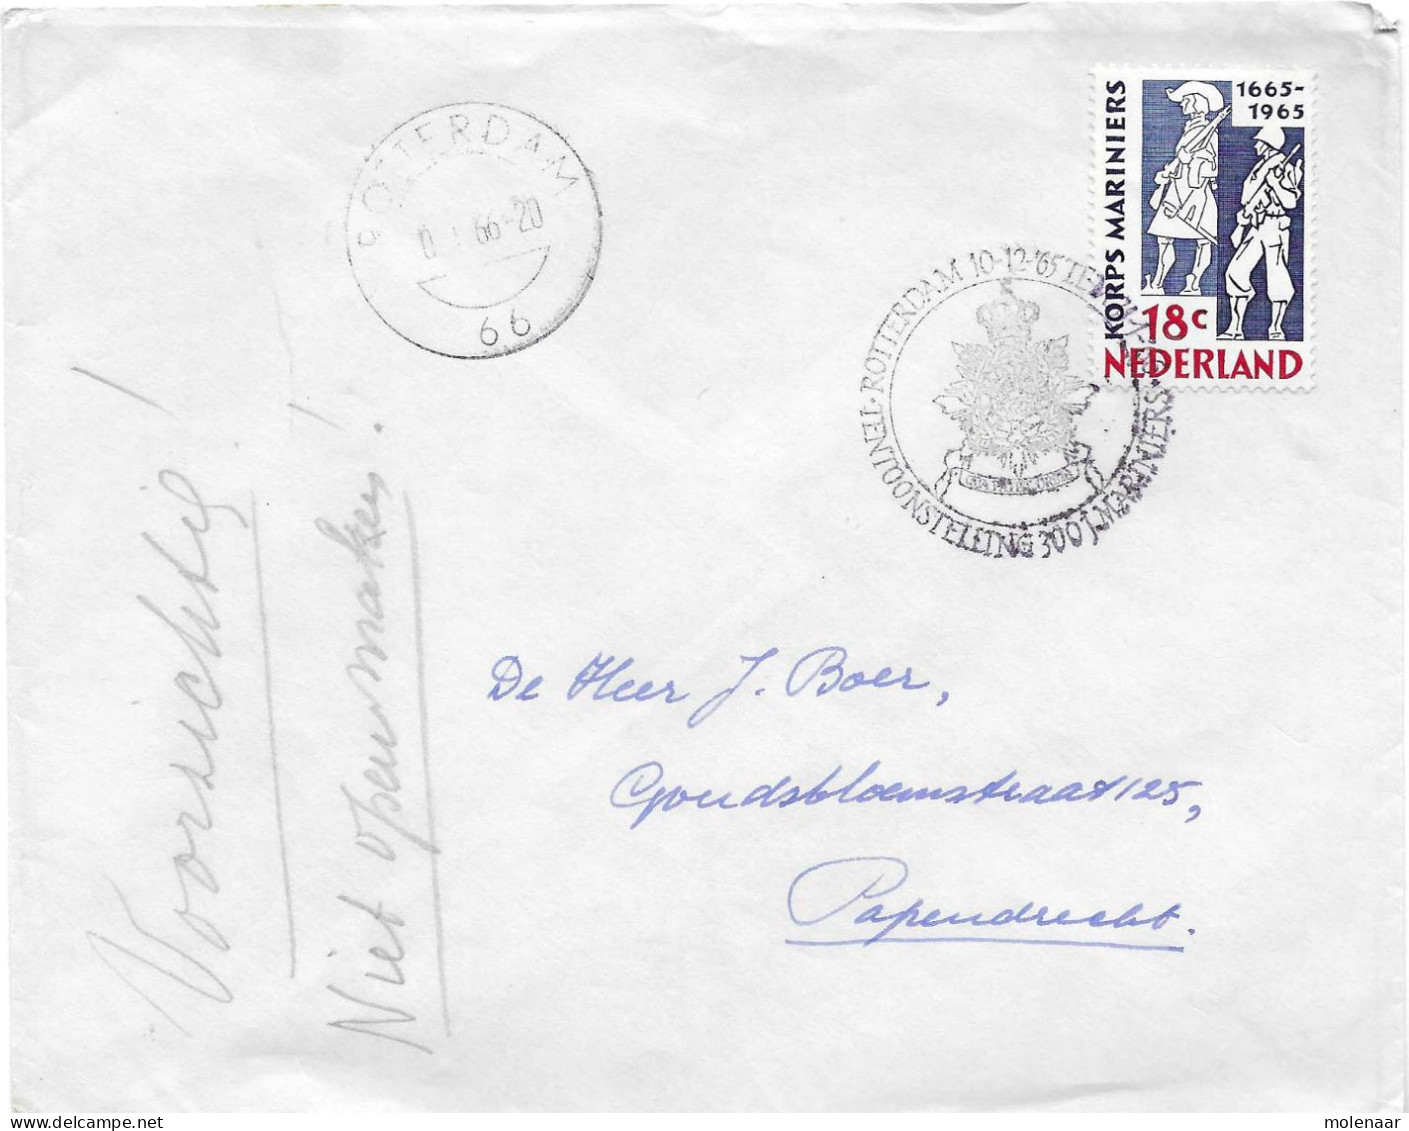 Postzegels > Europa > Nederland > Periode 1949-1980  > 1960-69 > Brief Uit 1965 100 Jaar Korps Mariniers (17716) - Brieven En Documenten